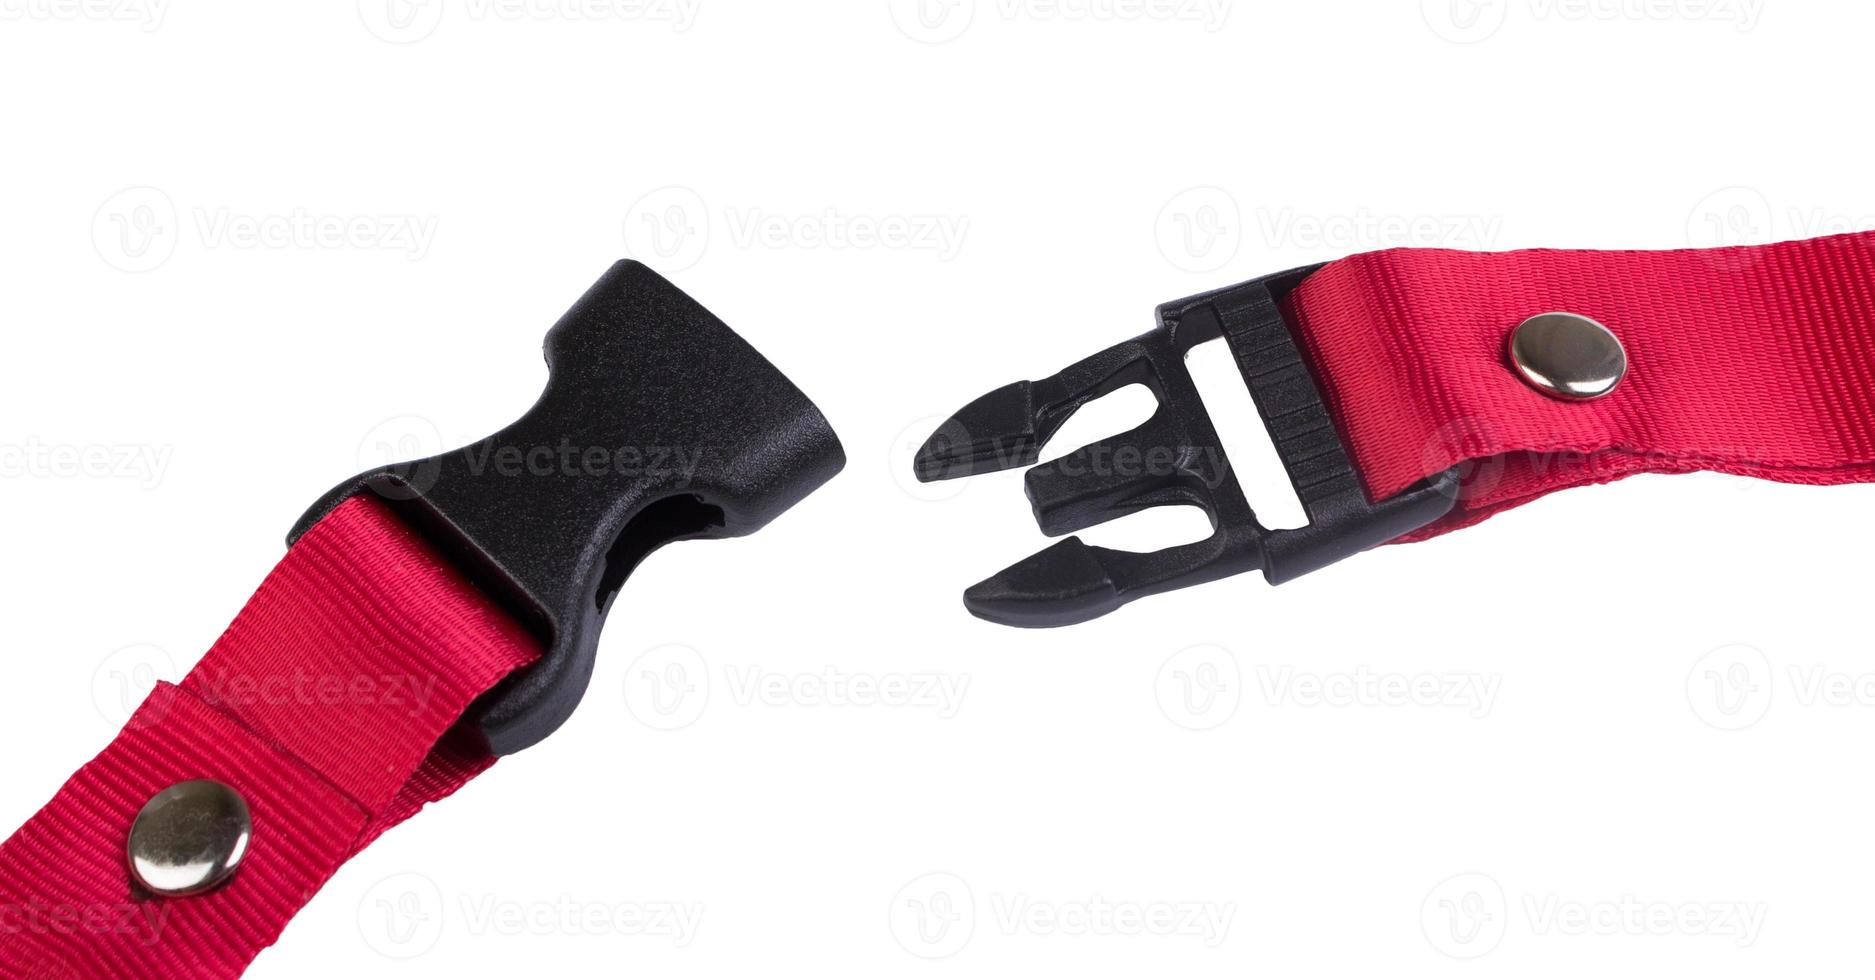 fivela de liberação lateral de plástico preta aberta com alça de tecido vermelha anexada foto